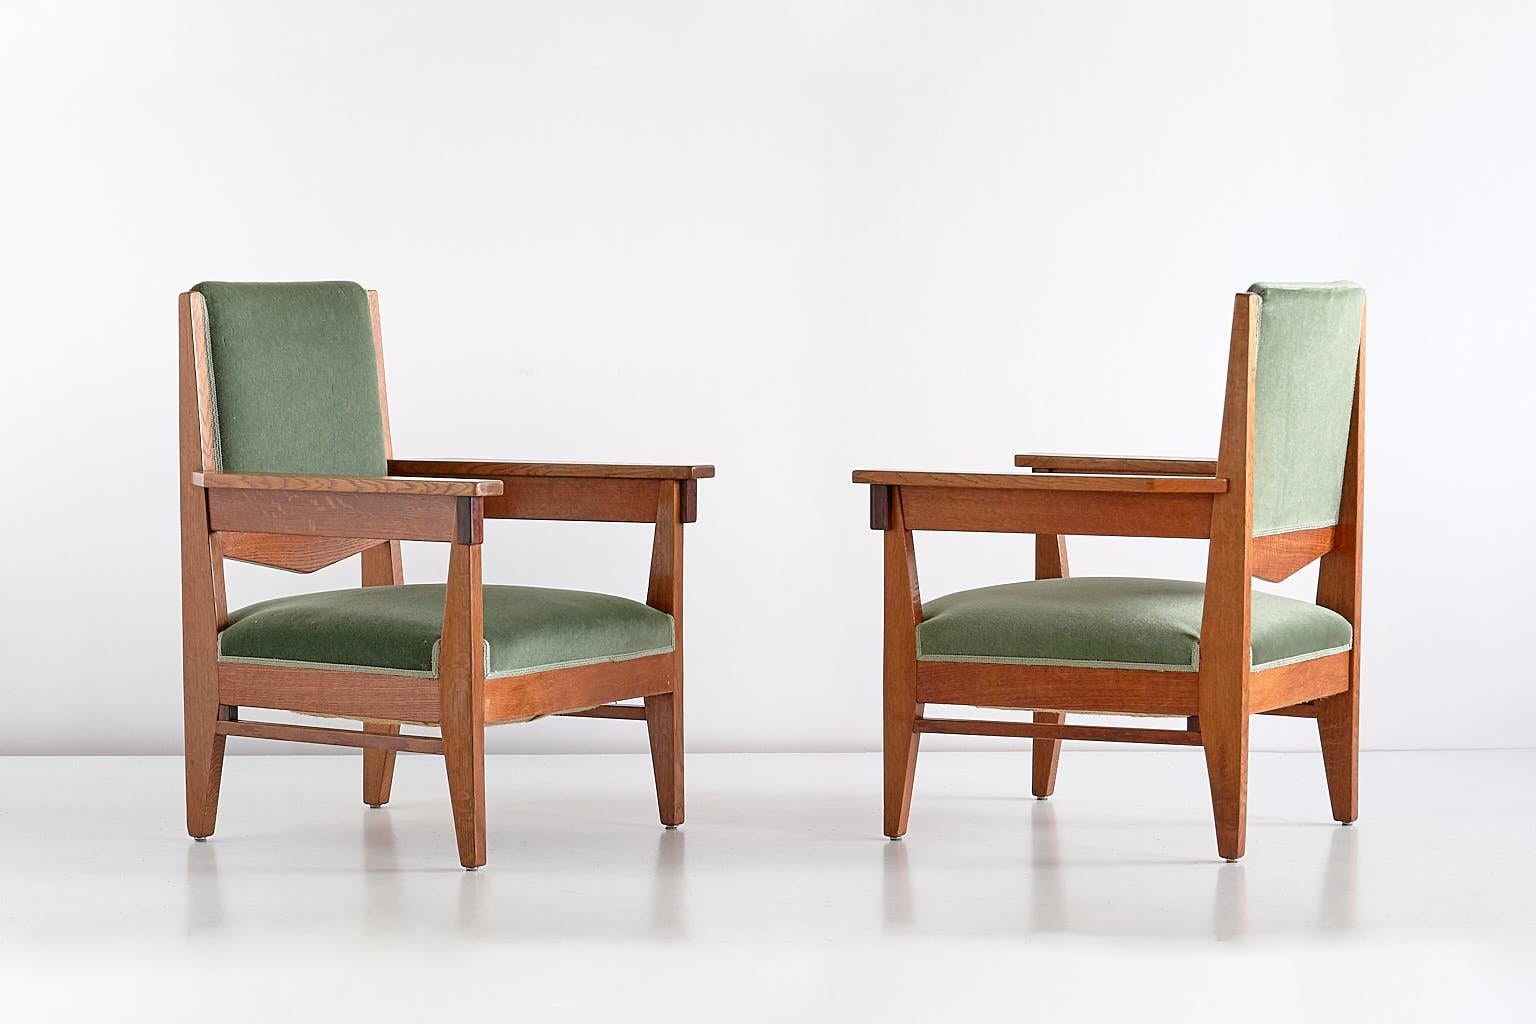 Dieses seltene Sesselpaar wurde von Anton Lucas entworfen und um 1925 in Leiden, Niederlande, hergestellt. Die Rahmen sind aus massivem Eichenholz gefertigt, mit einem geometrischen Frontdetail aus Makassar-Ebenholz. Die Stühle behalten ihre